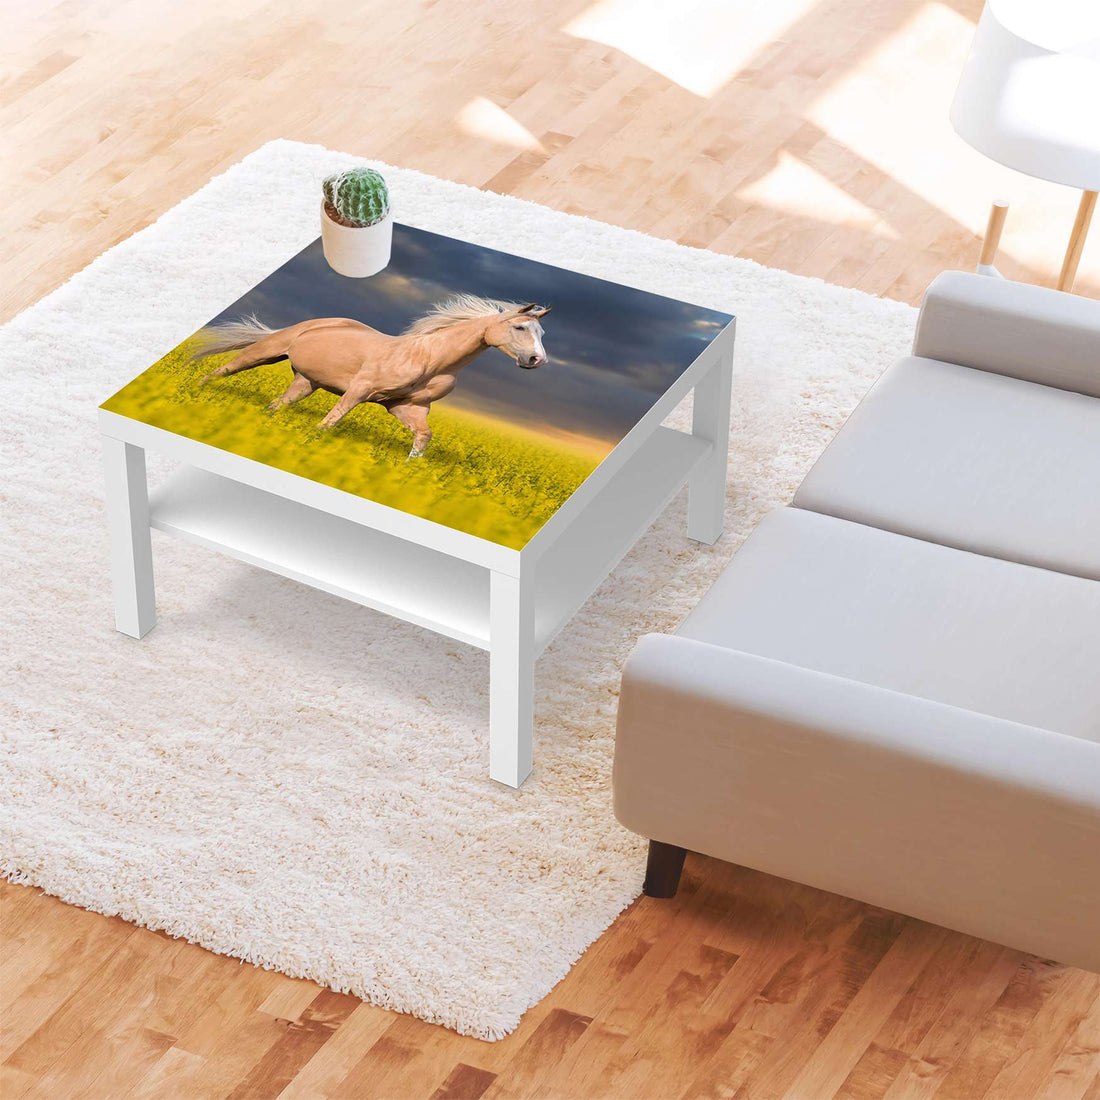 Selbstklebende Folie Wildpferd - IKEA Lack Tisch 78x78 cm - Wohnzimmer